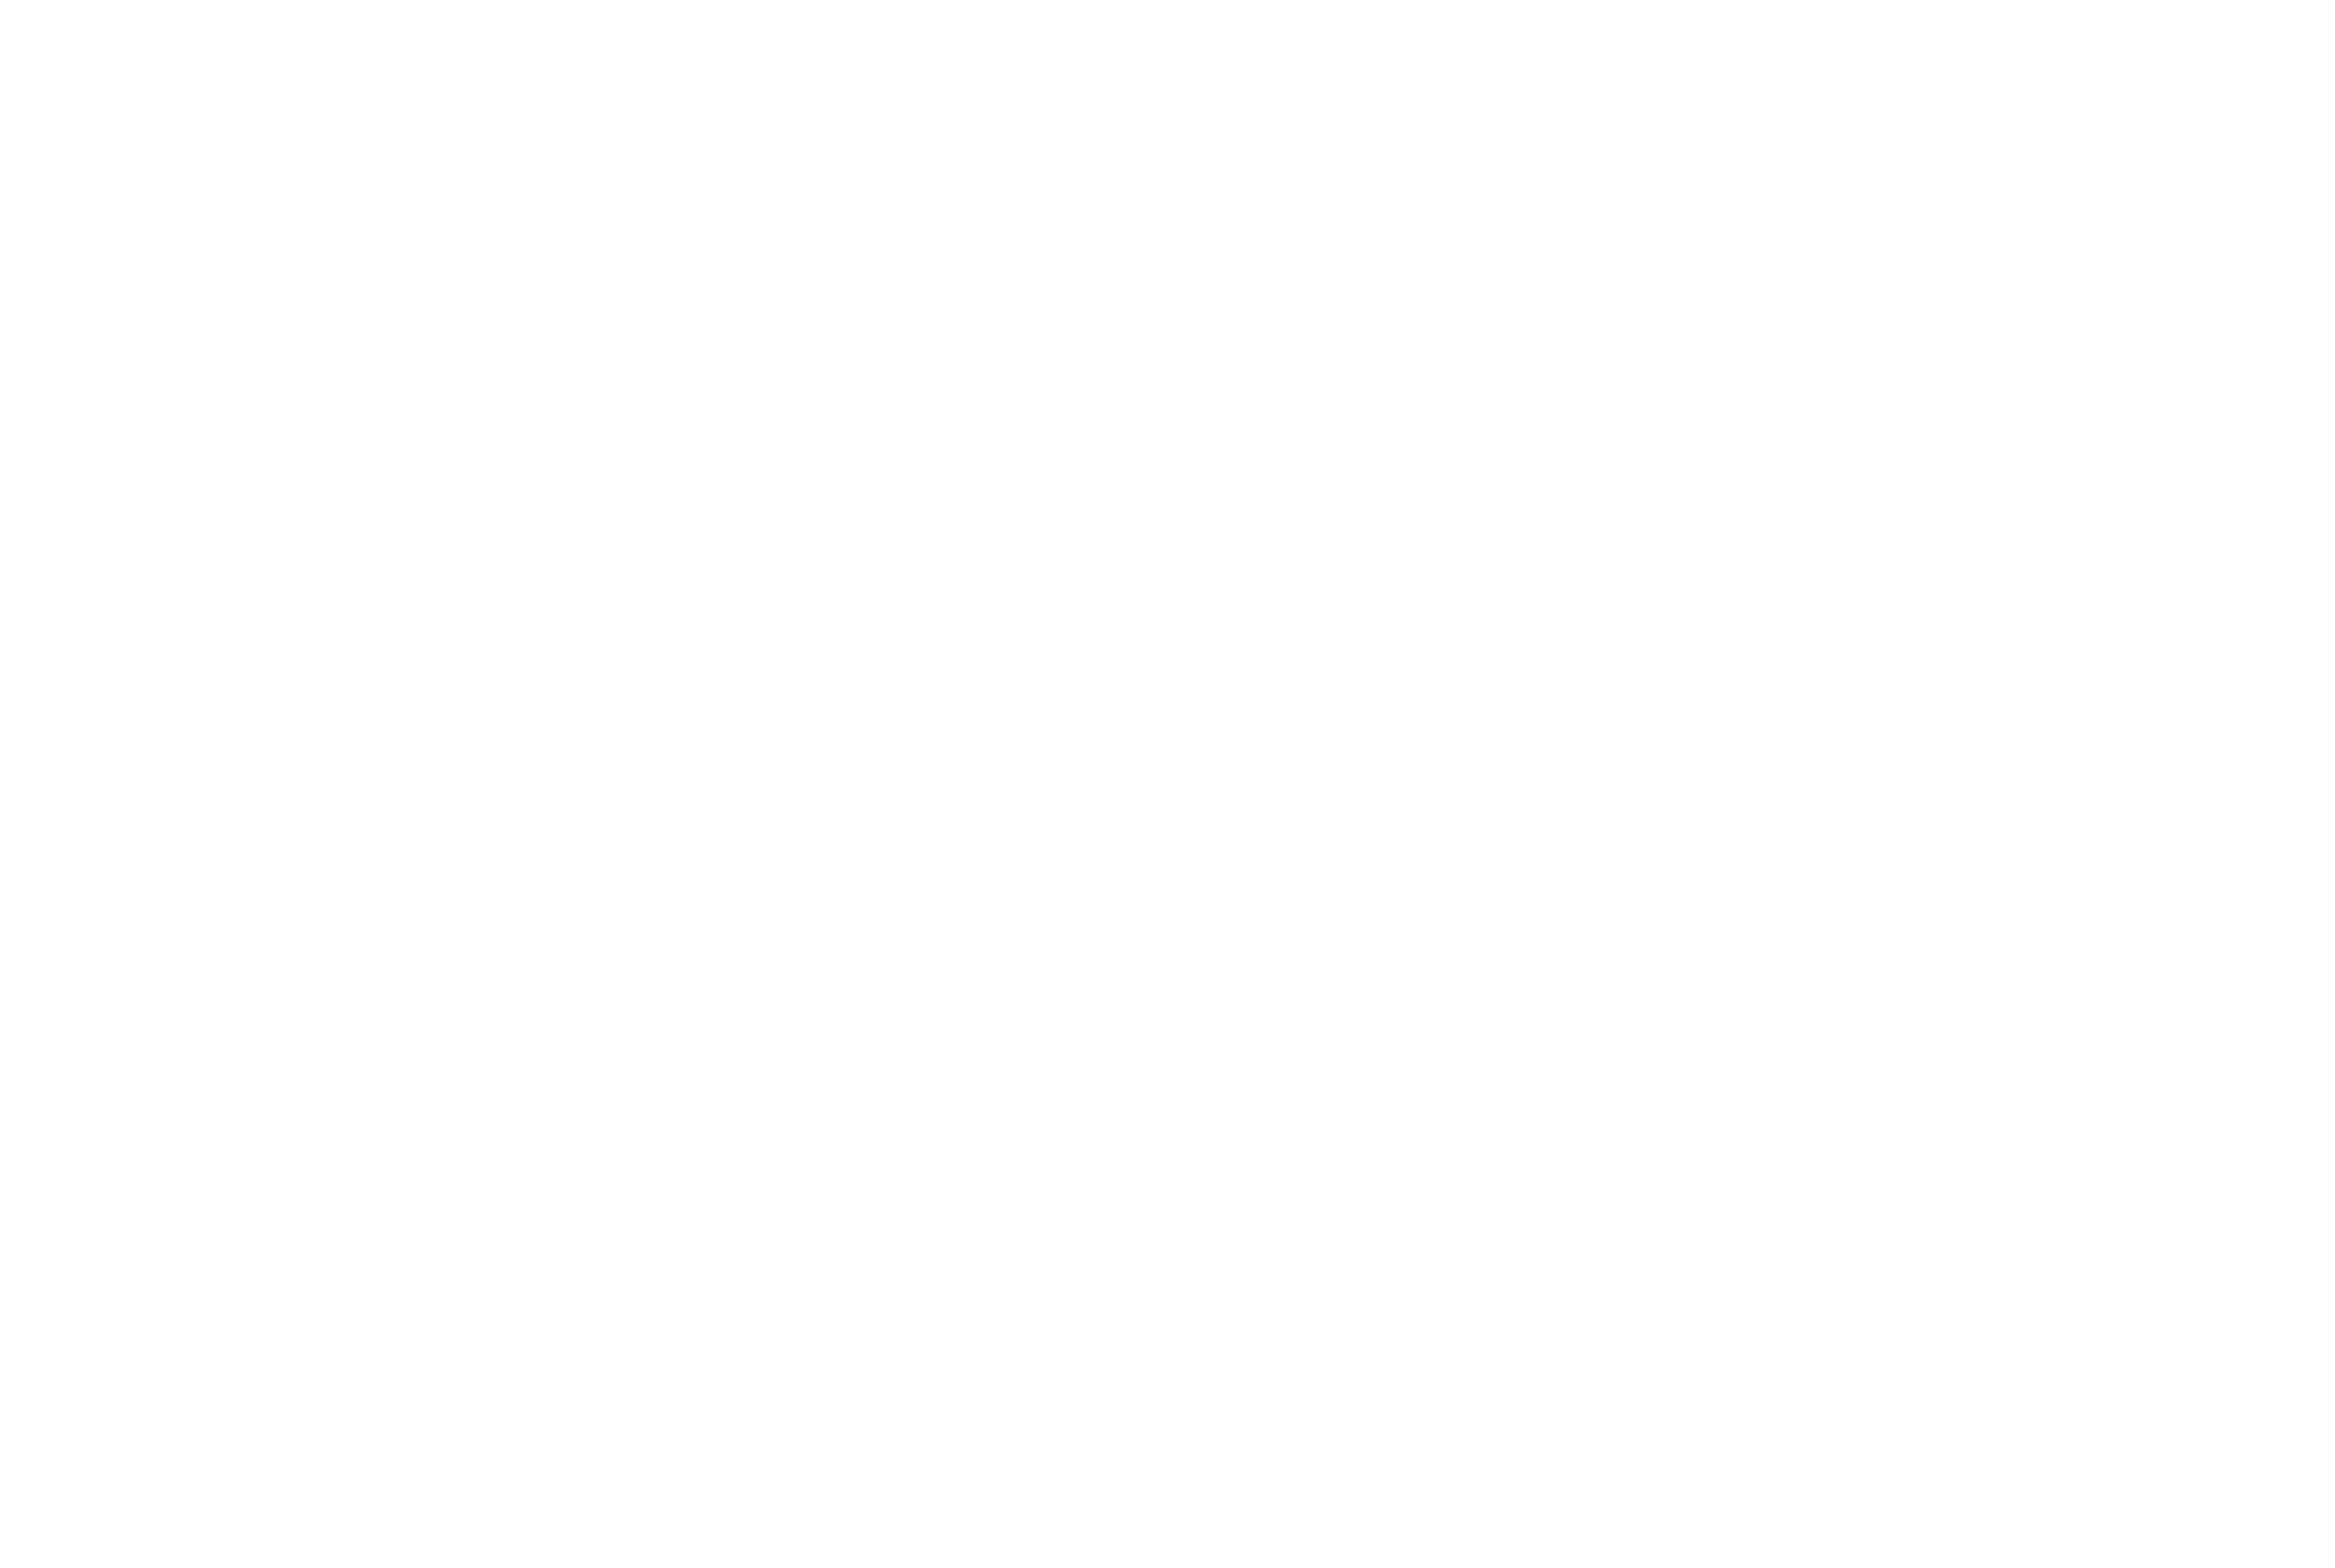 Hifi custom shop logo